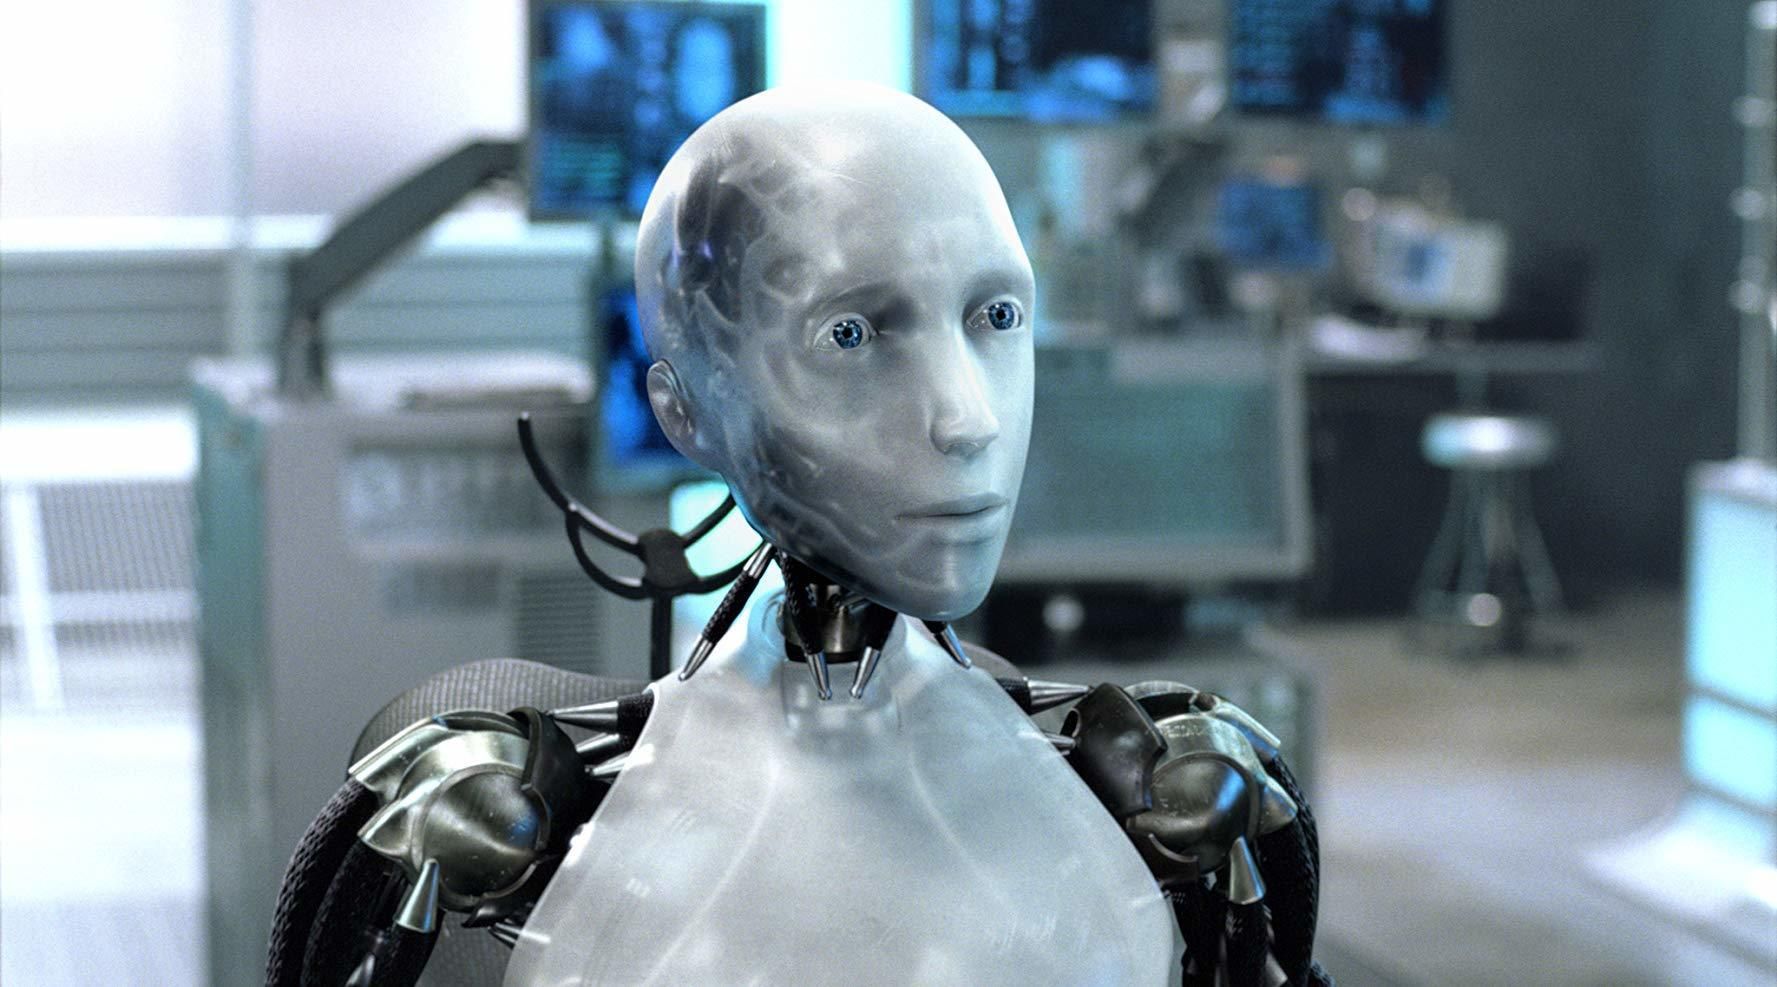  Lanac Brze hrane prikazao robota koji će da zameni radnike u kuhinji (VIDEO)